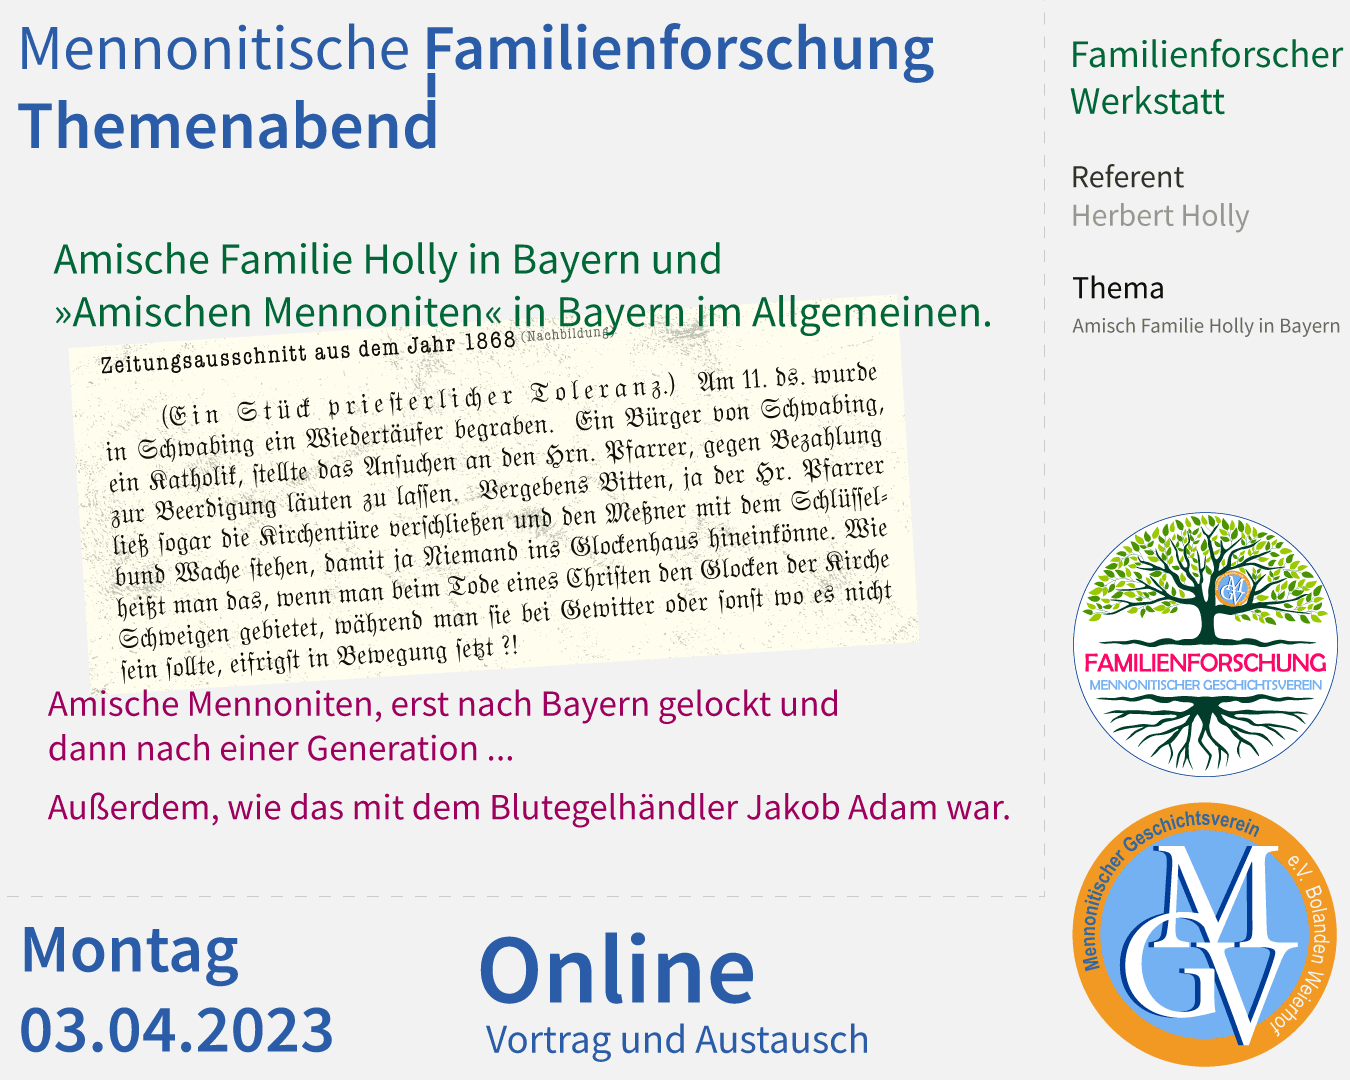 Amischen Mennoniten in Bayern, Amische Familie Holly.